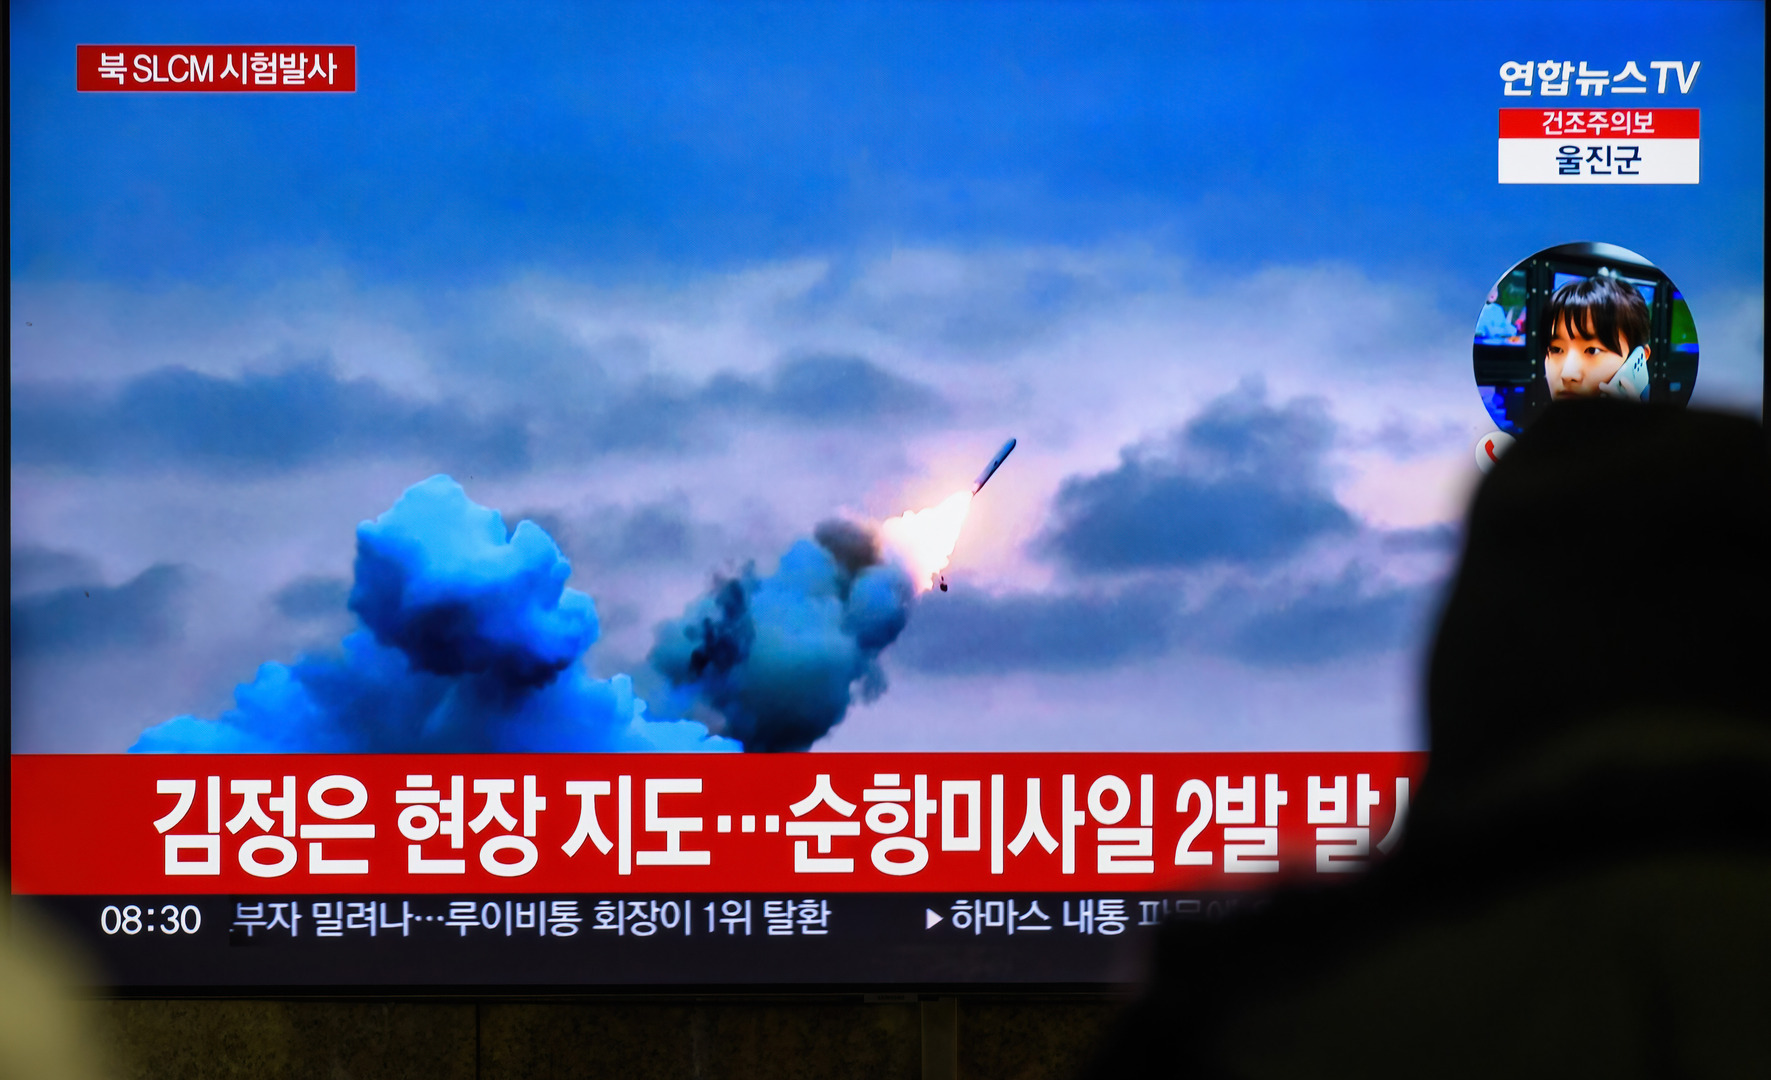 كوريا الشمالية تطلق صاروخا باليستيا 